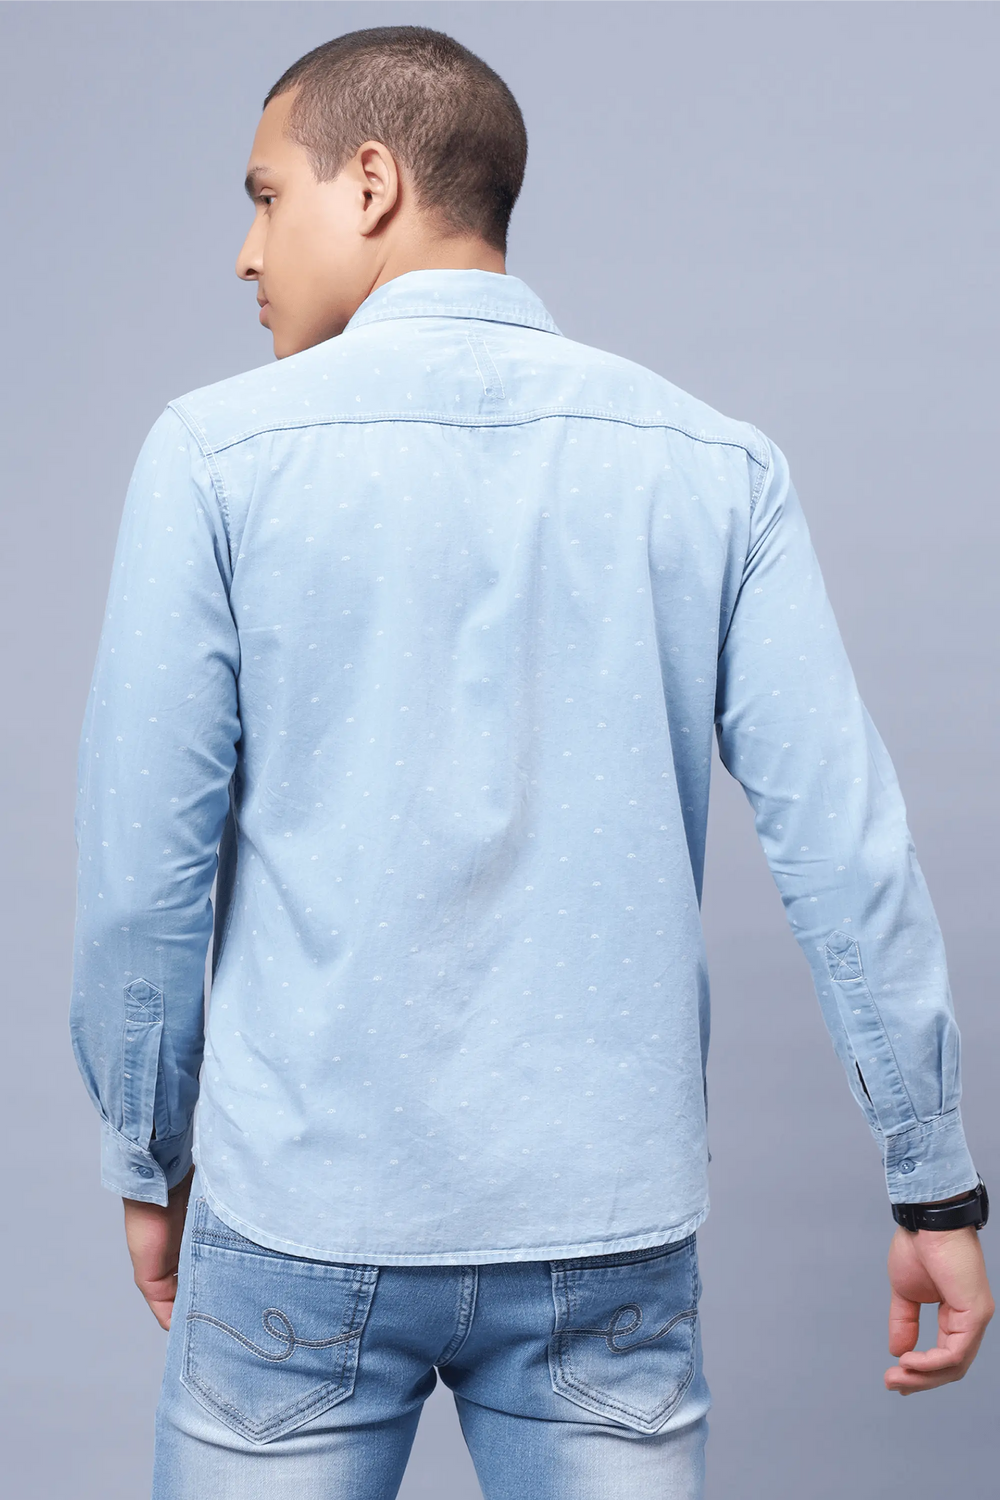 Regular Fit Light Blue Solid Denim Shirt For Men - Peplos Jeans 